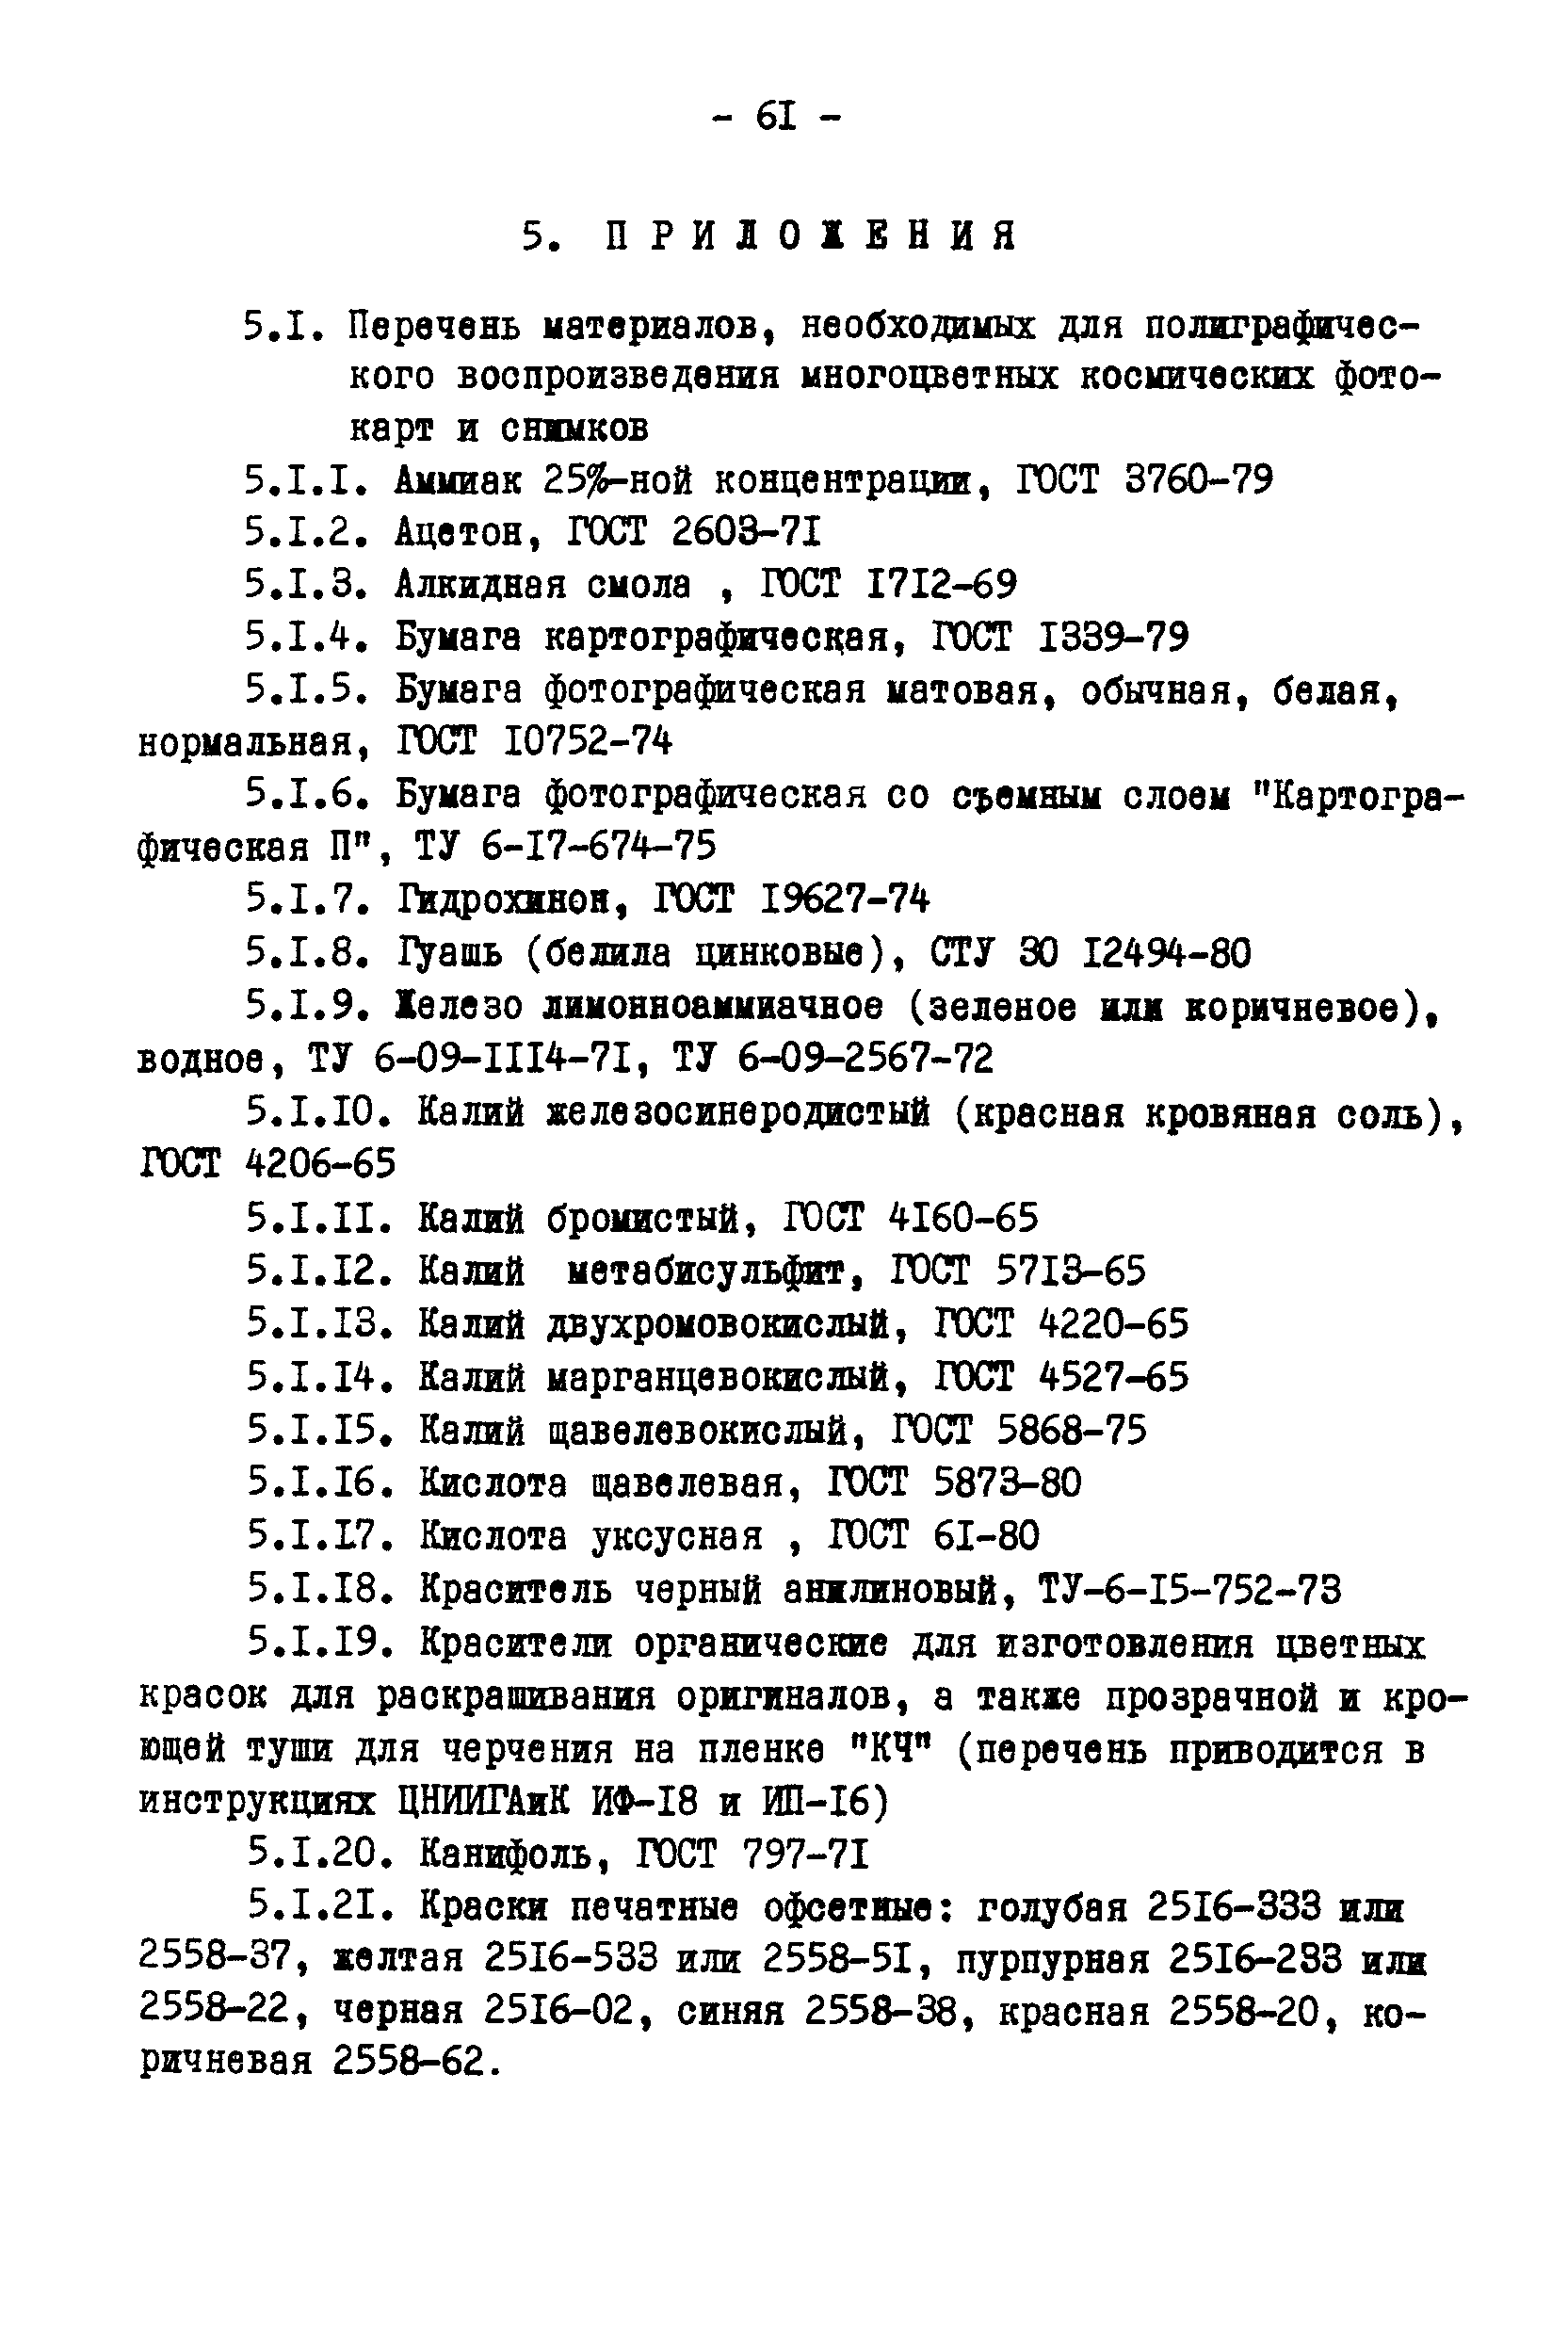 ГКИНП 05-146-81